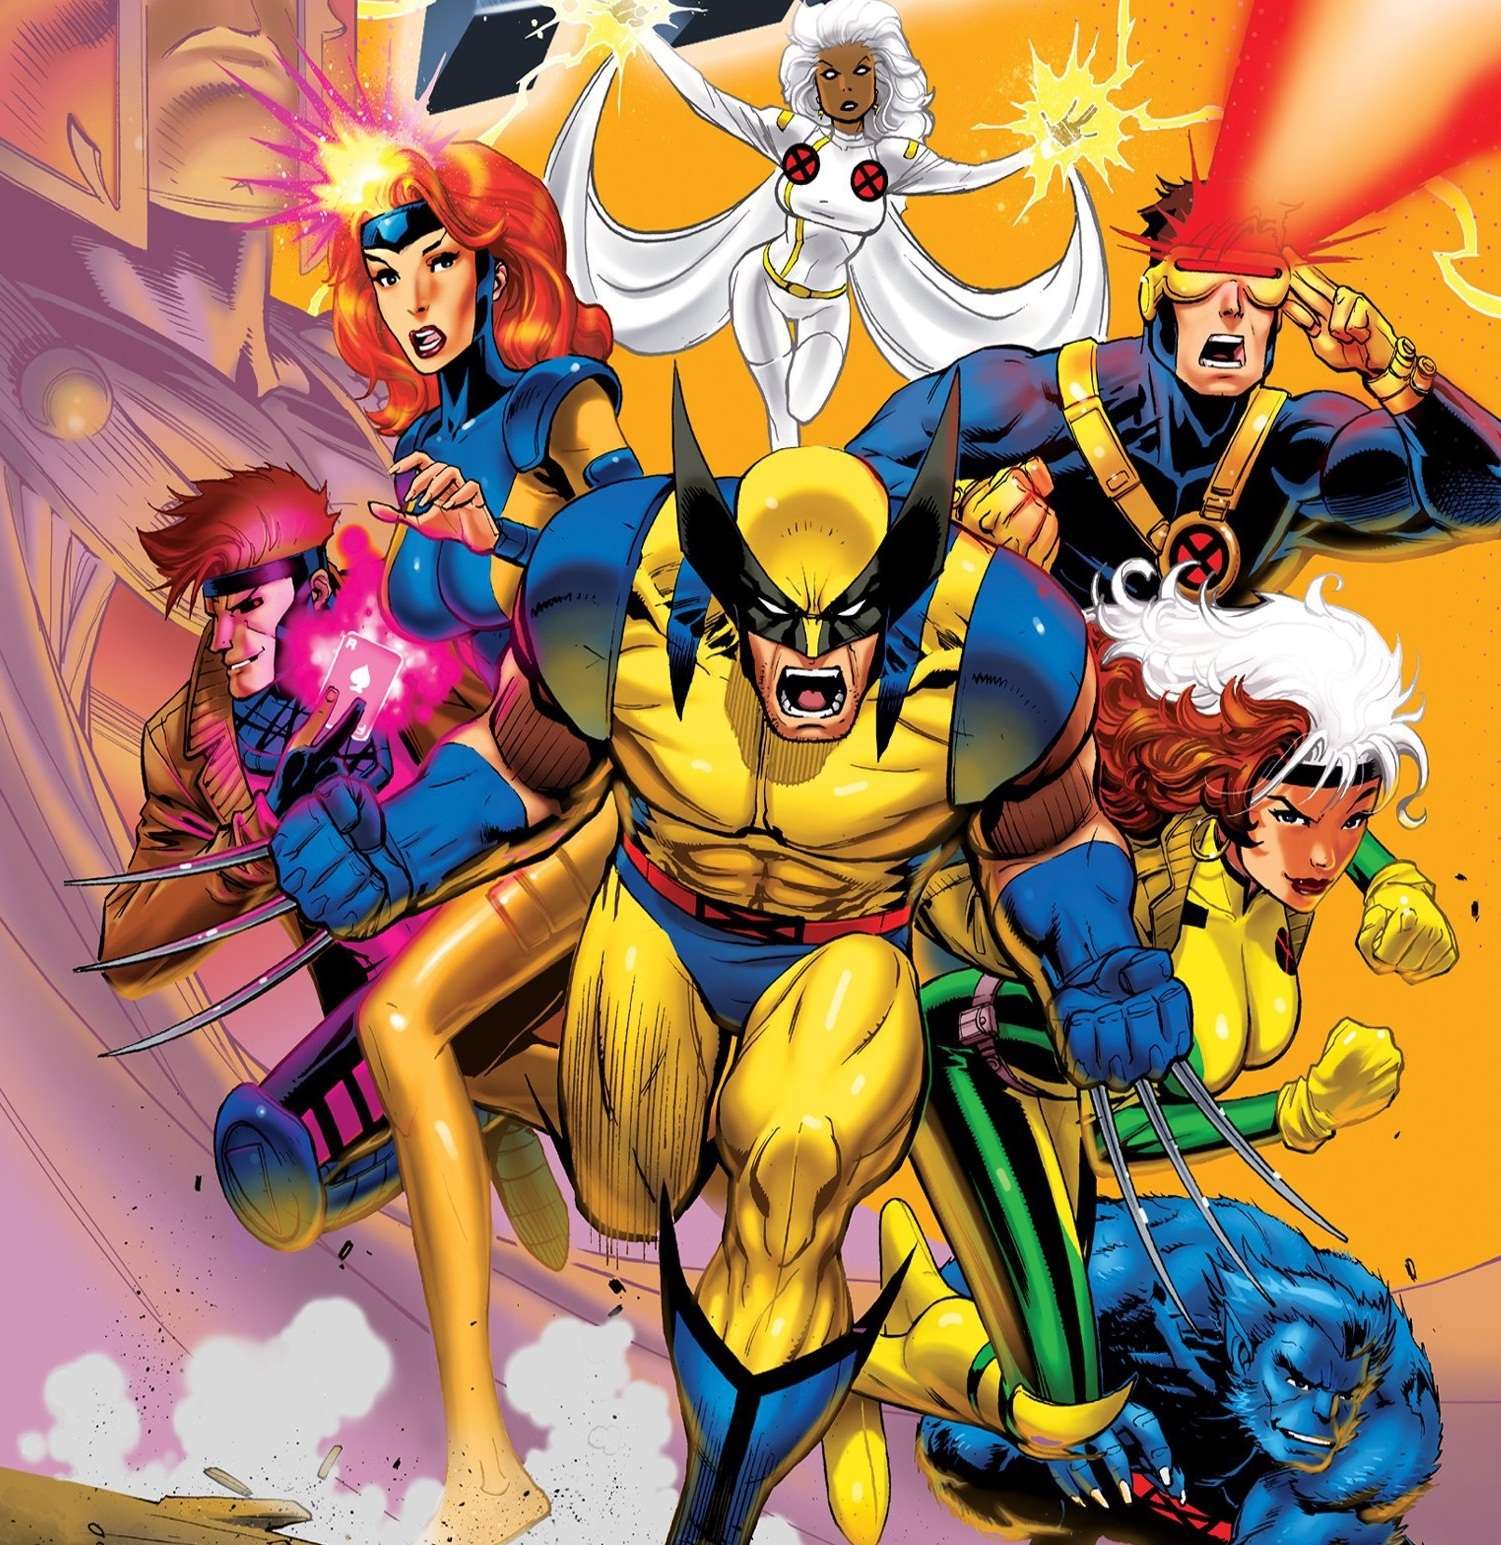 X-Men animated series